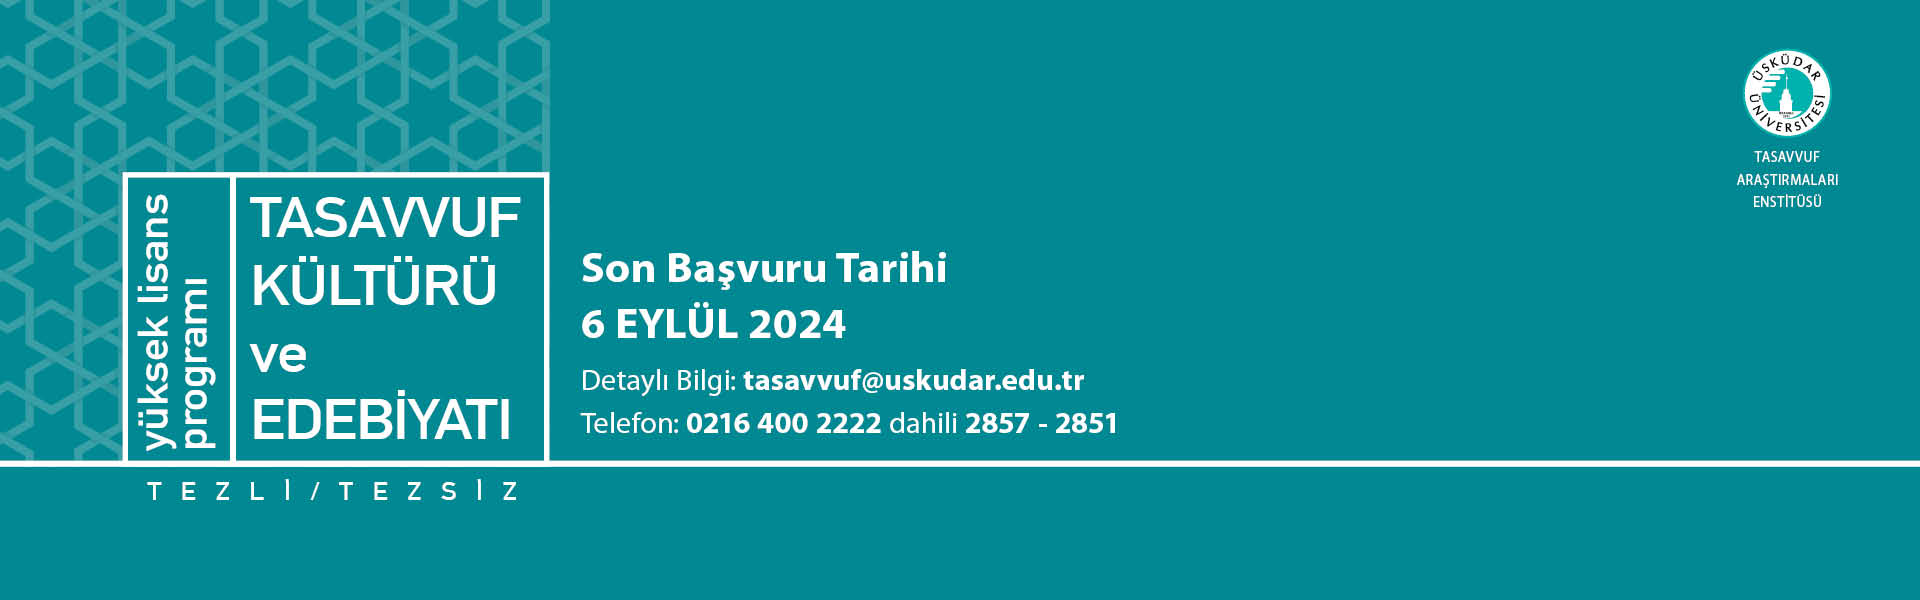 Tasavvuf Kültürü ve Edebiyatı Yüksek Lisans Programı